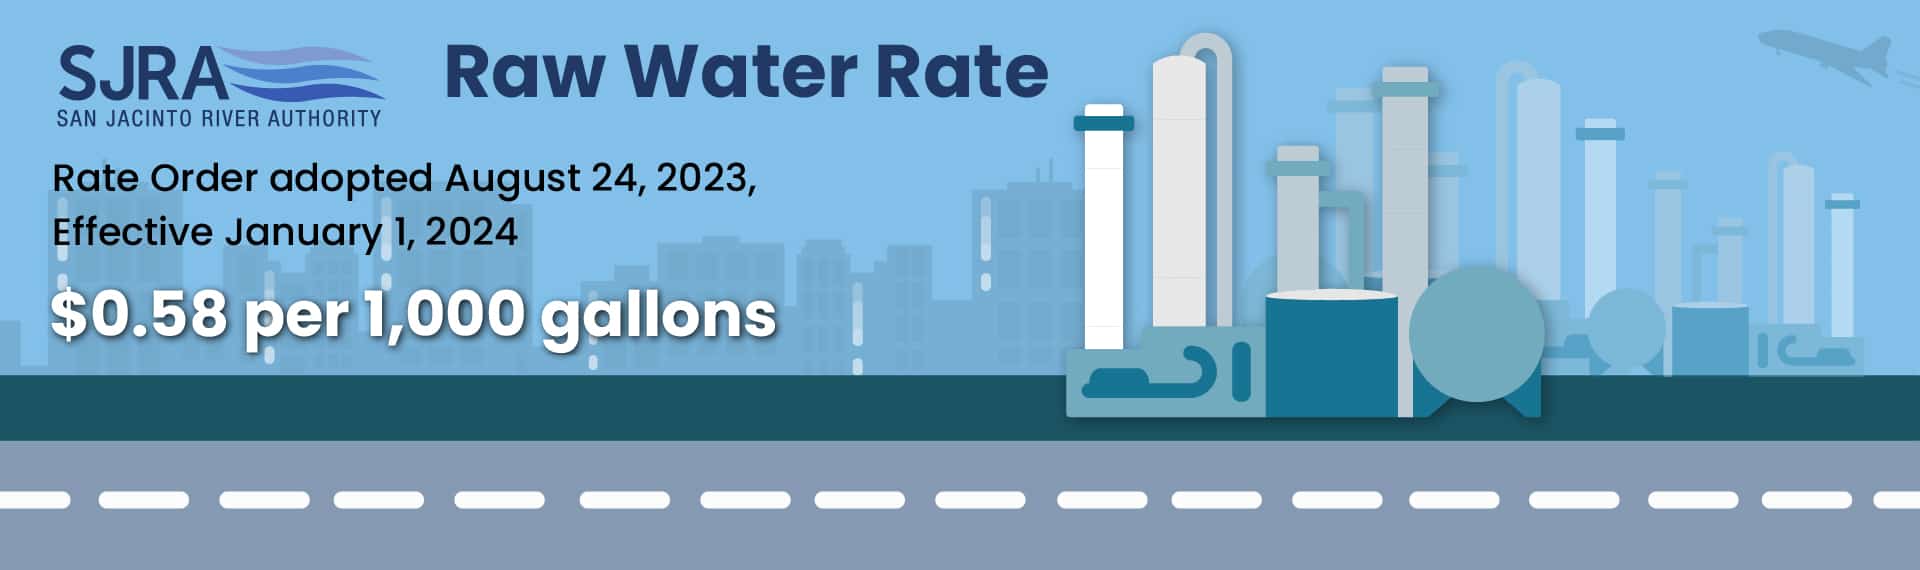 SJRA Raw Water Rates